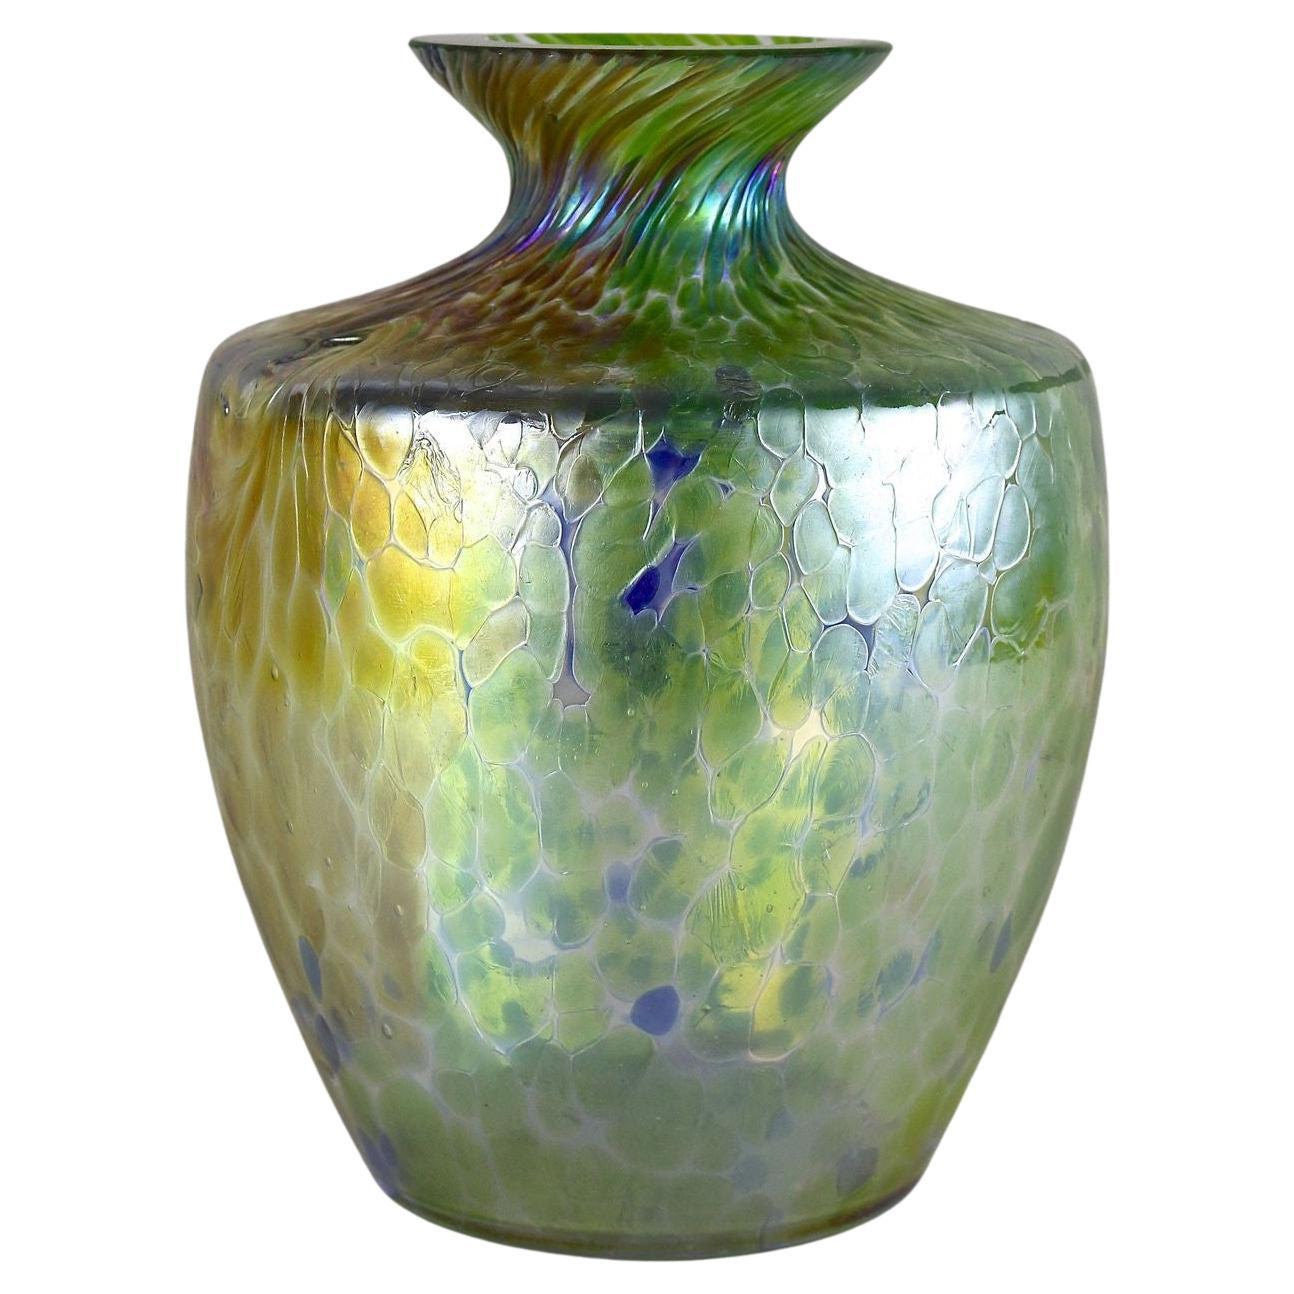 Vase en verre irisé Art nouveau attribué à Fritz Heckert, Bohemia vers 1905